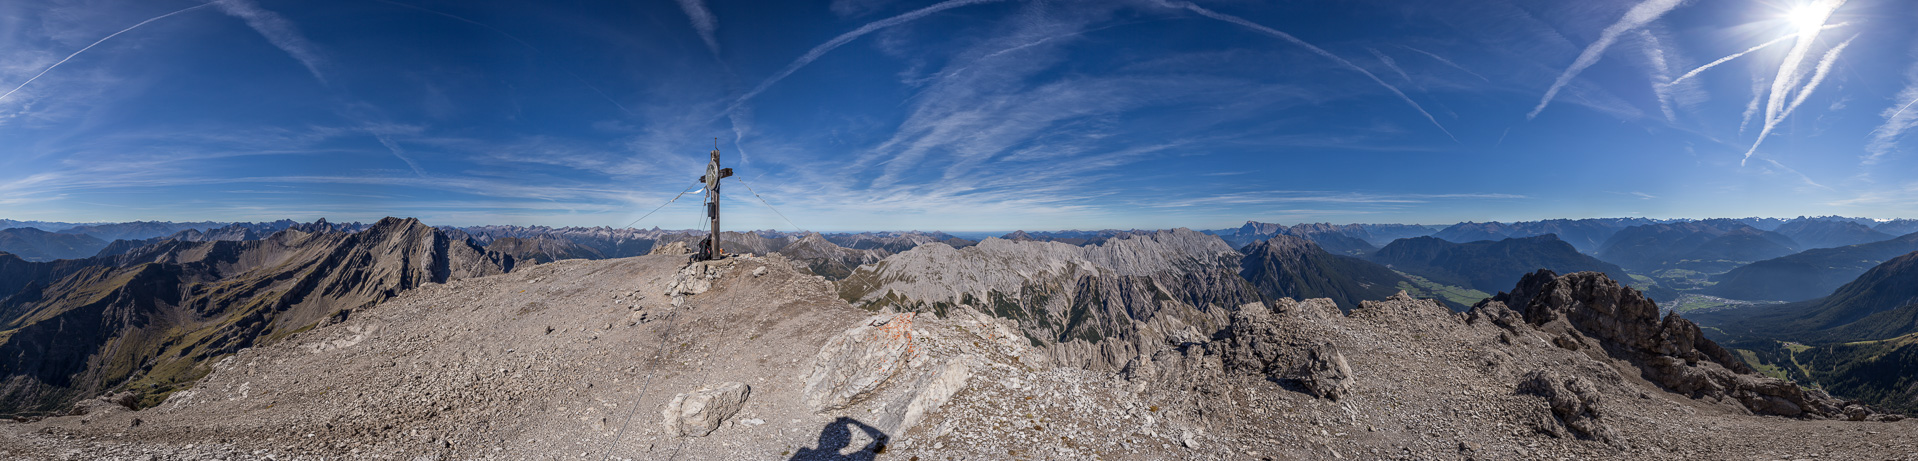 Gipfelpanorama mit herrlichem Rundblick.